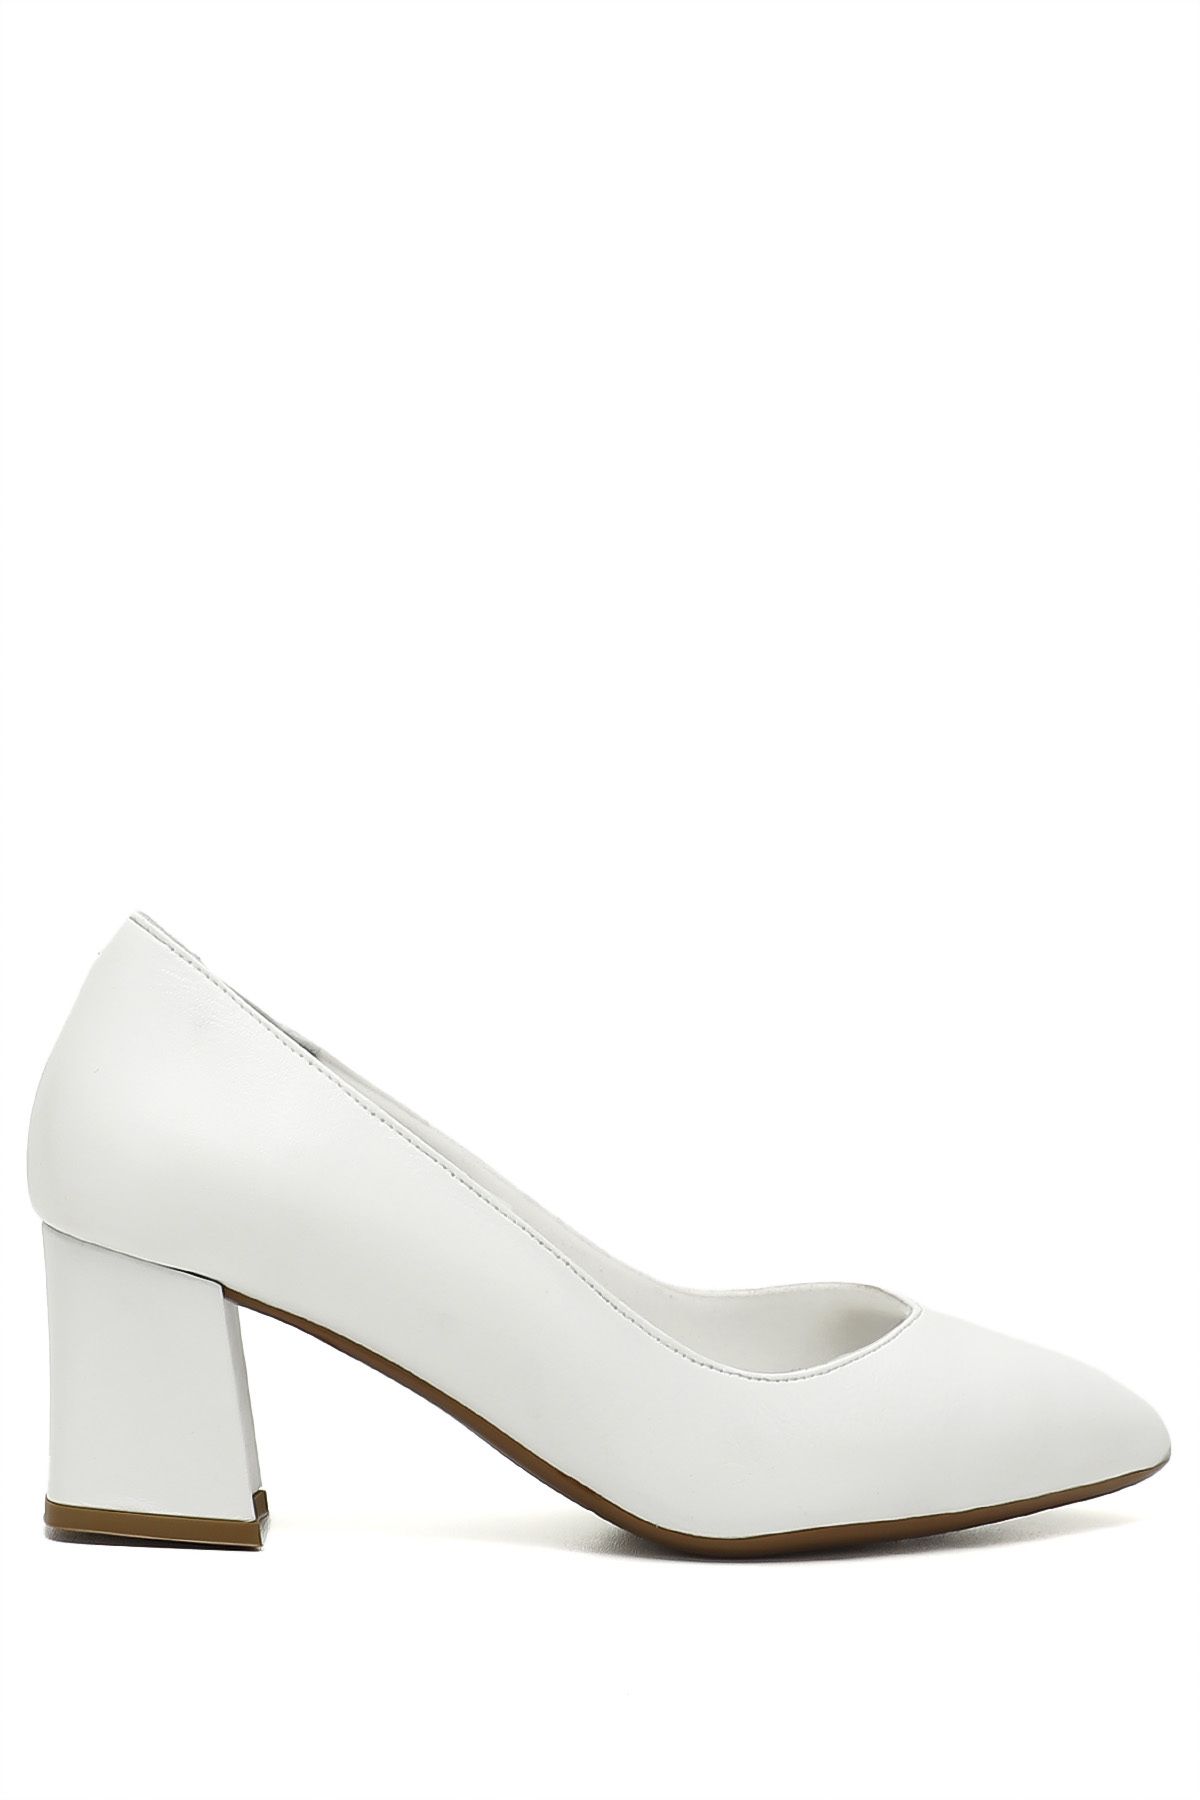 GÖNDERİ(R) Beyaz Gön Hakiki Deri Sivri Burun Orta Kalın Topuklu Kadın Ayakkabı 24170